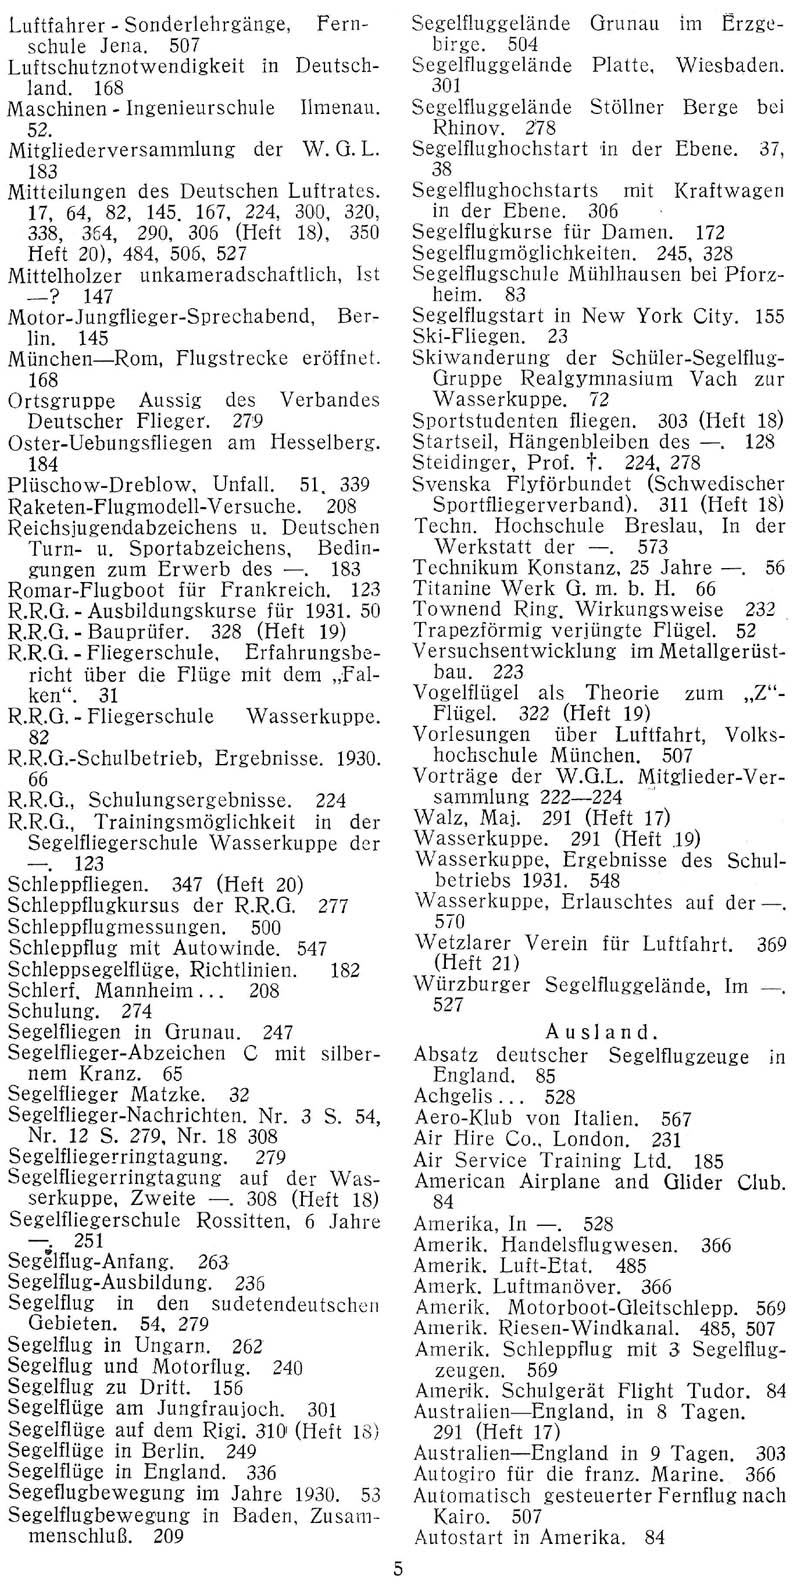 Sachregister und Inhaltsverzeichnis der Zeitschrift Flugsport für das Jahr 1931